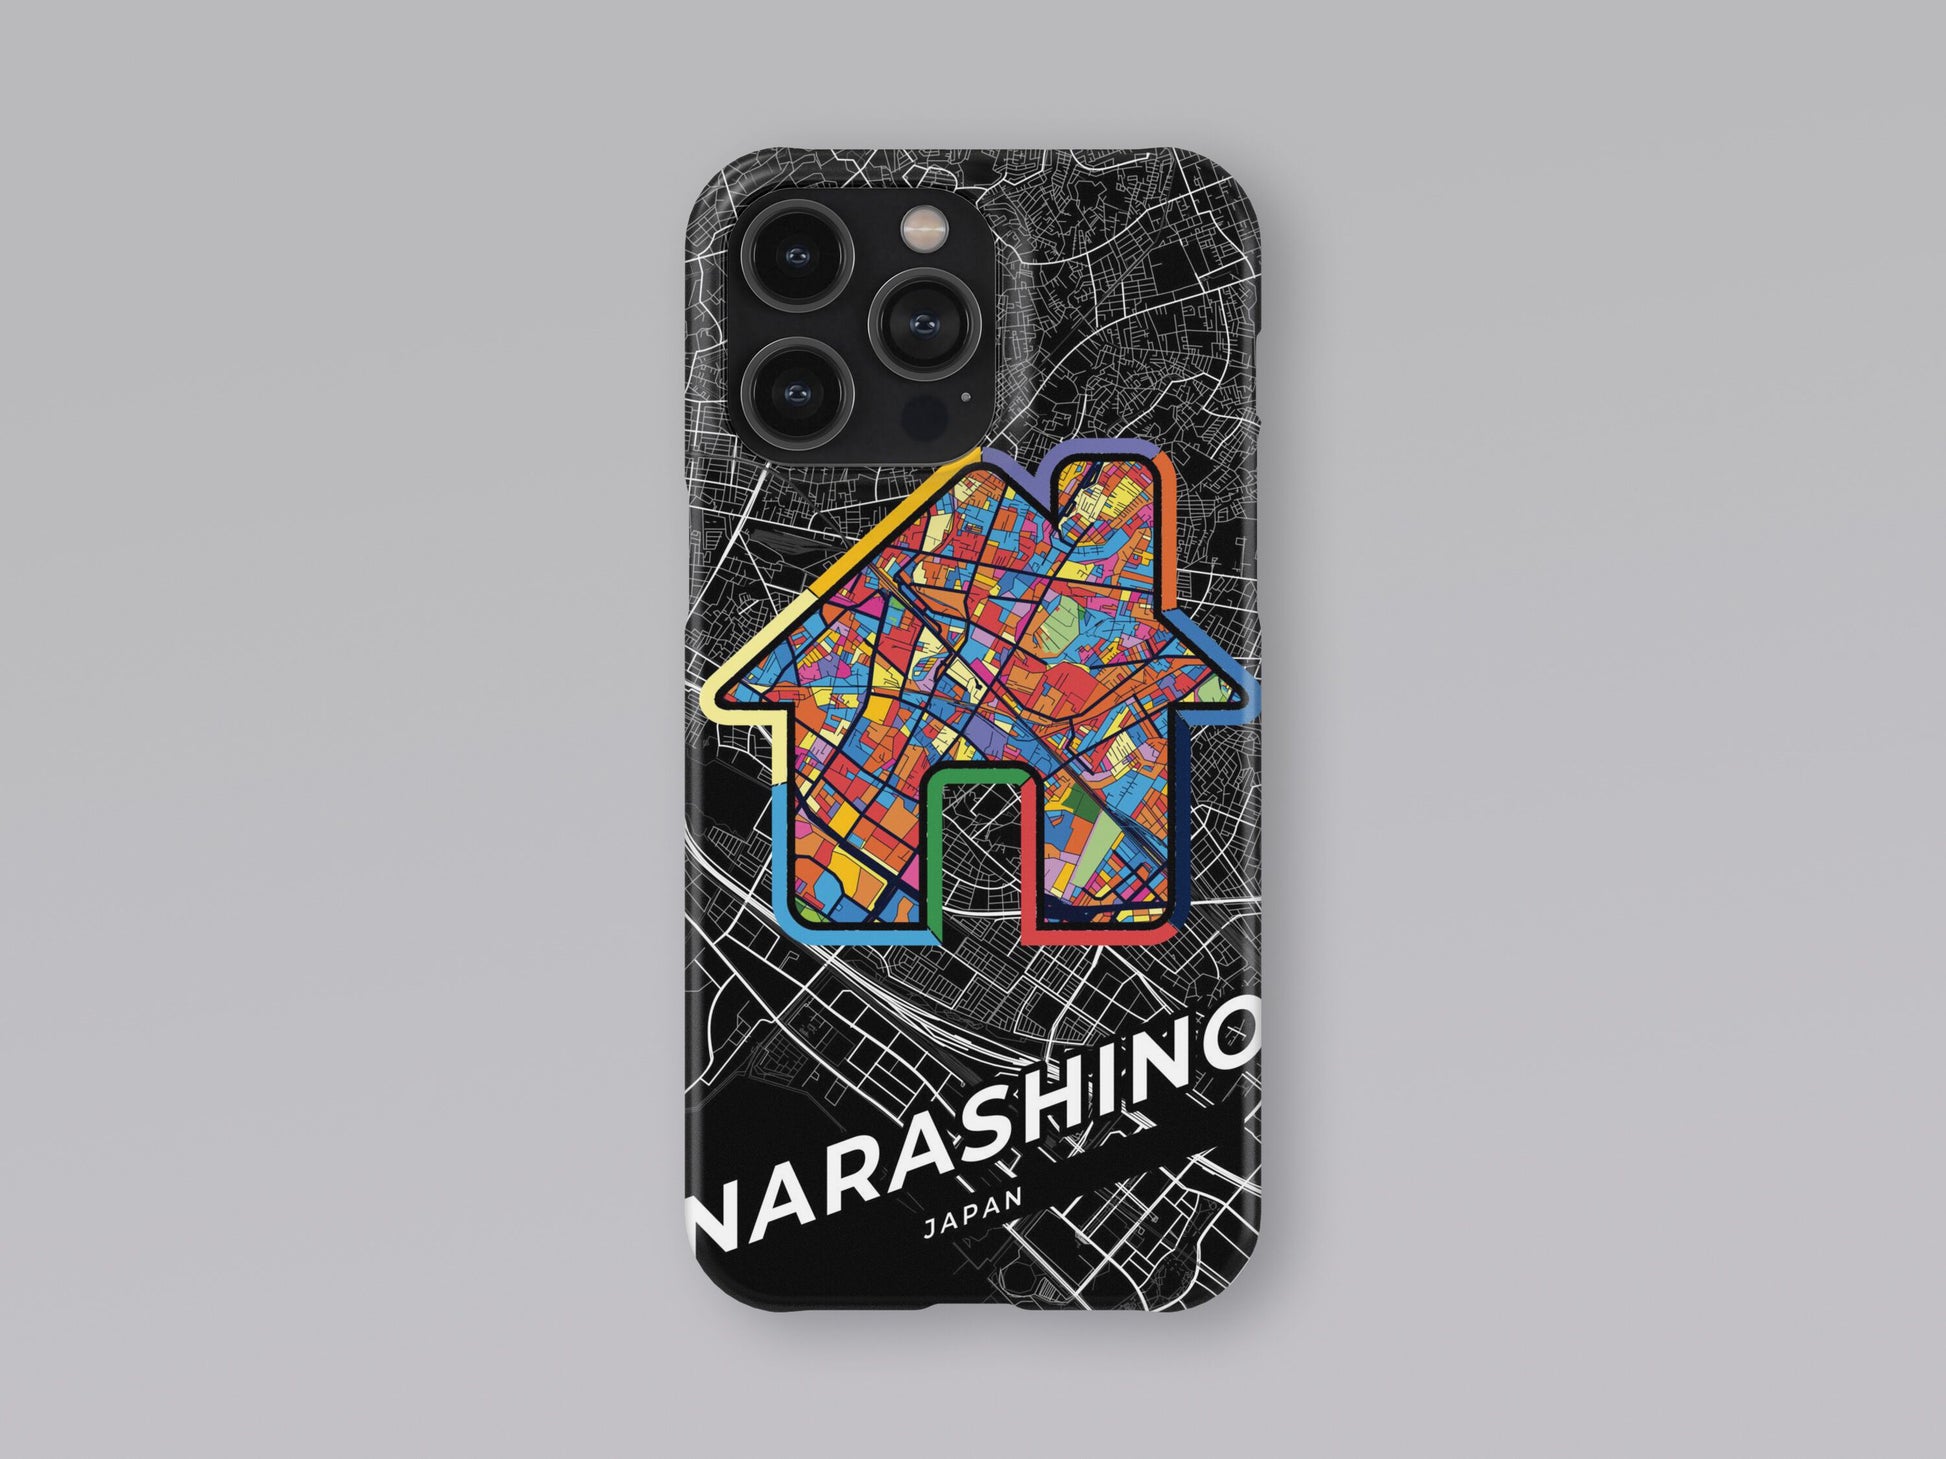 Narashino Japan slim phone case with colorful icon 3